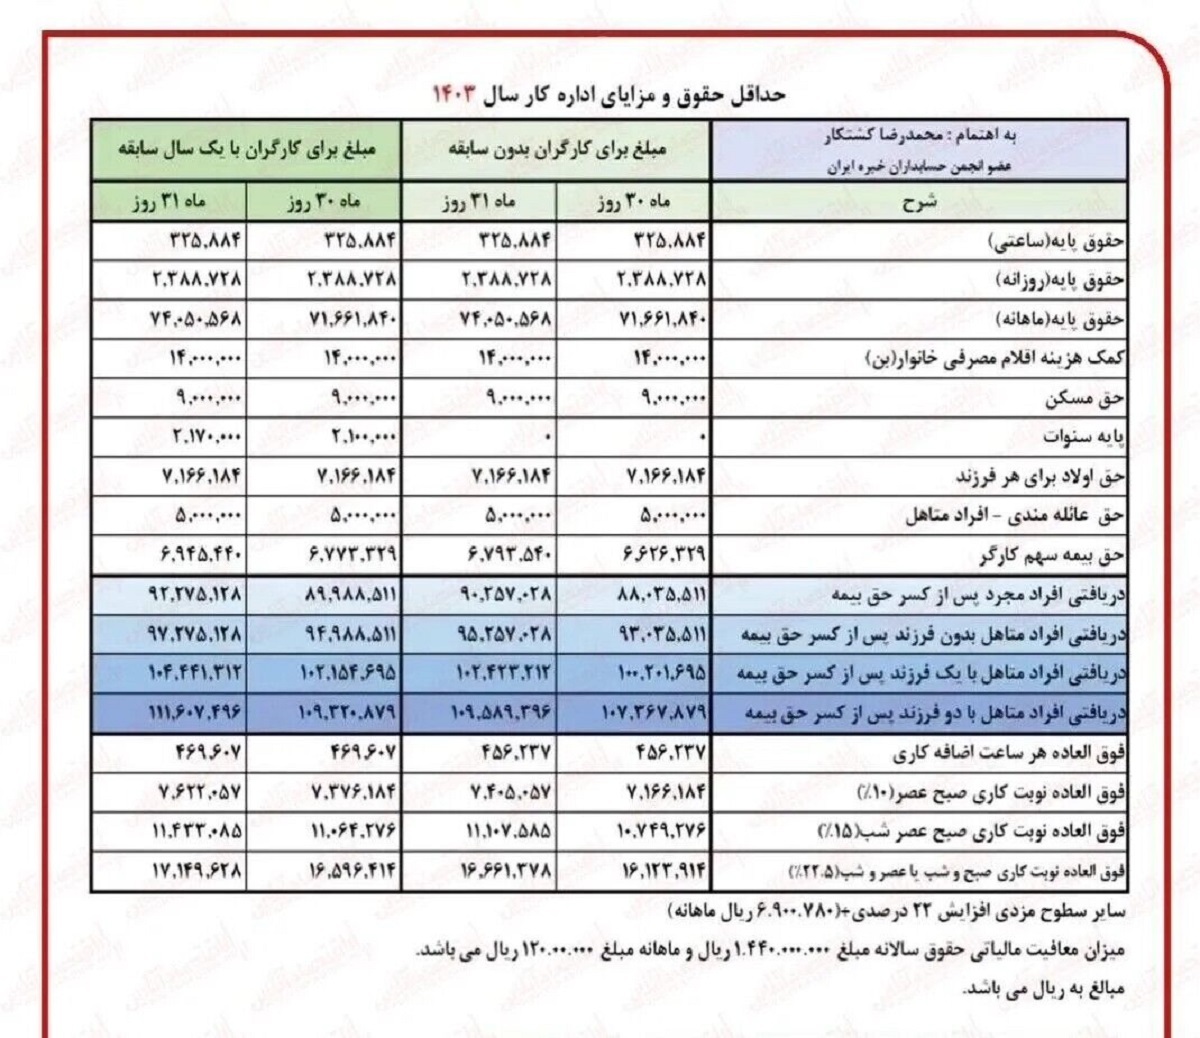 جدول میزان حقوق بازنشستگان بعد از اجرای همسان سازی